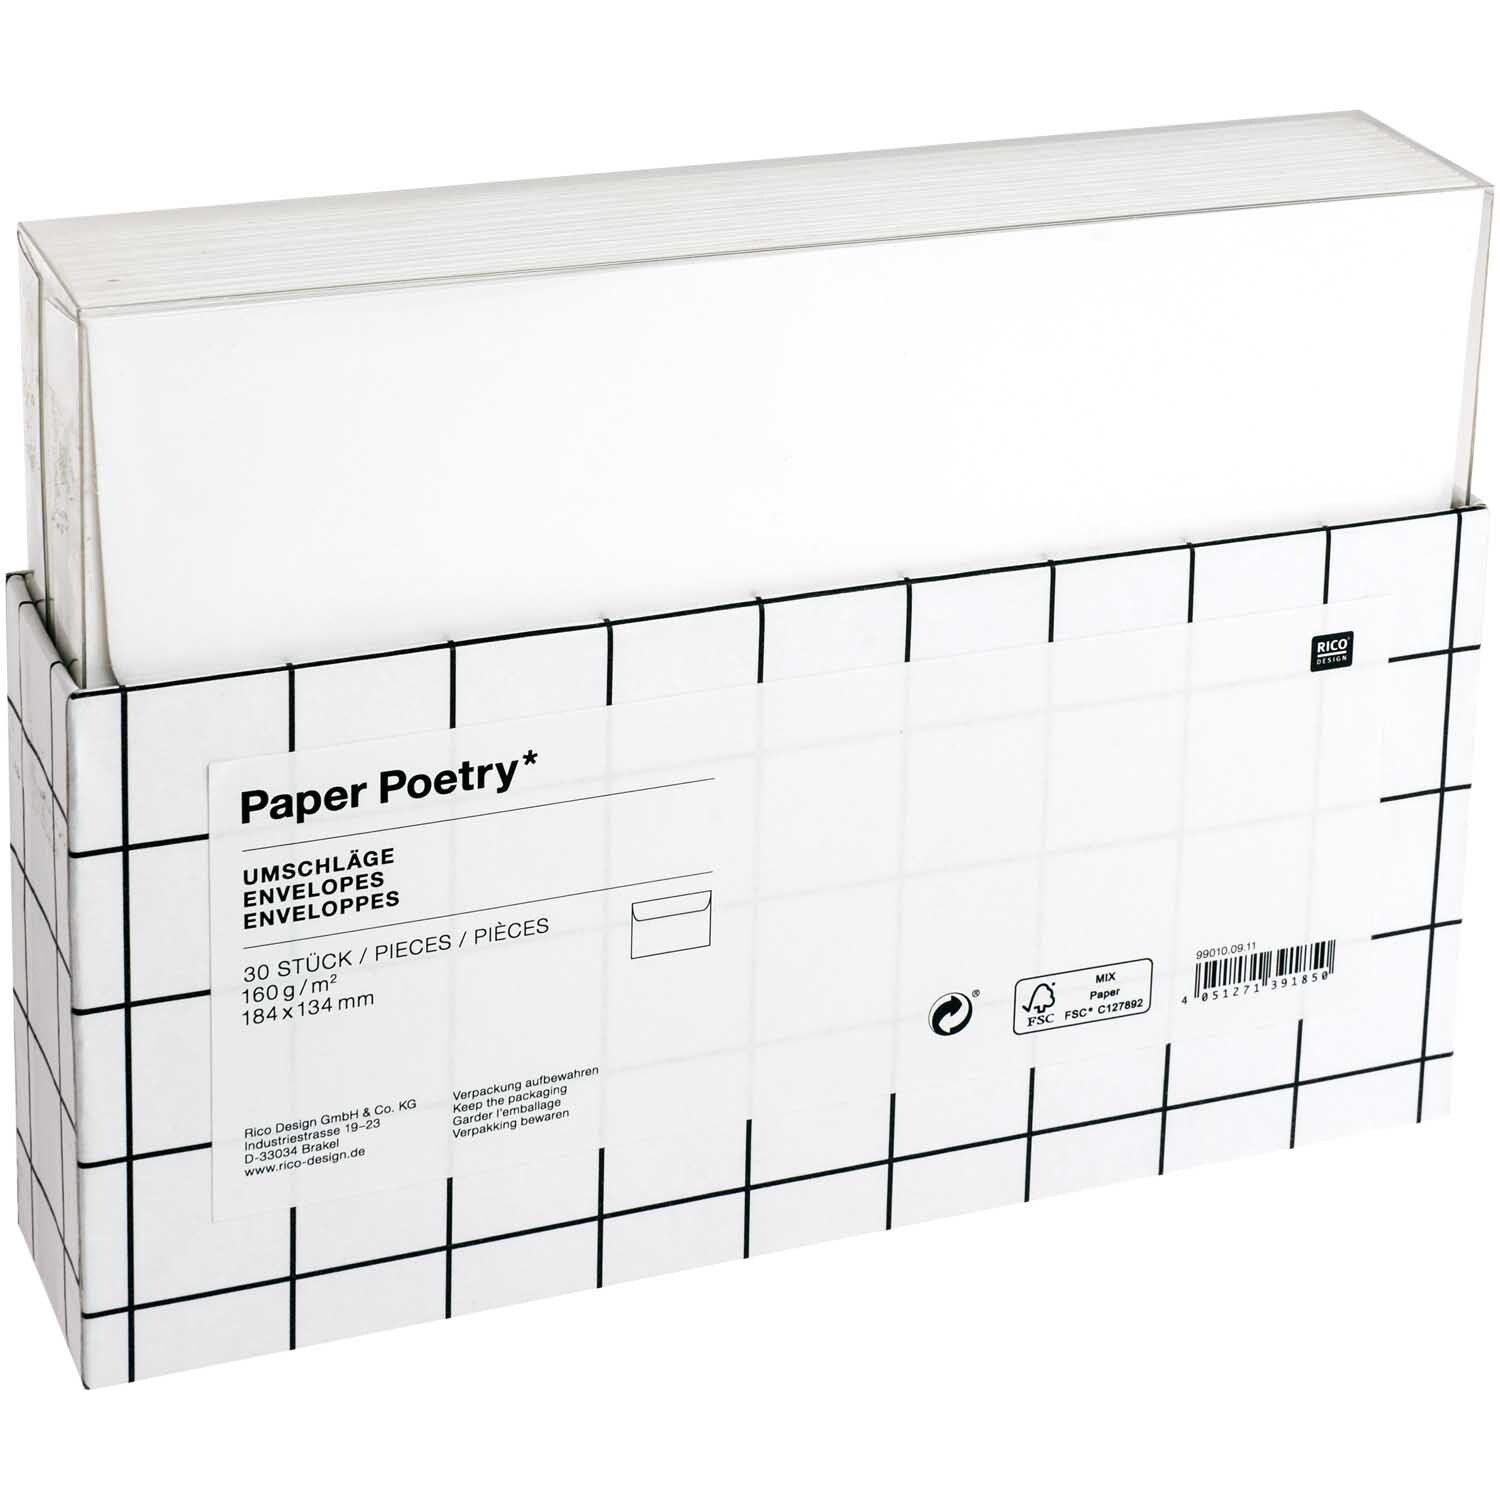 Paper Poetry Umschläge weiß 18,4x13,4cm 160g/m² 30 Stück